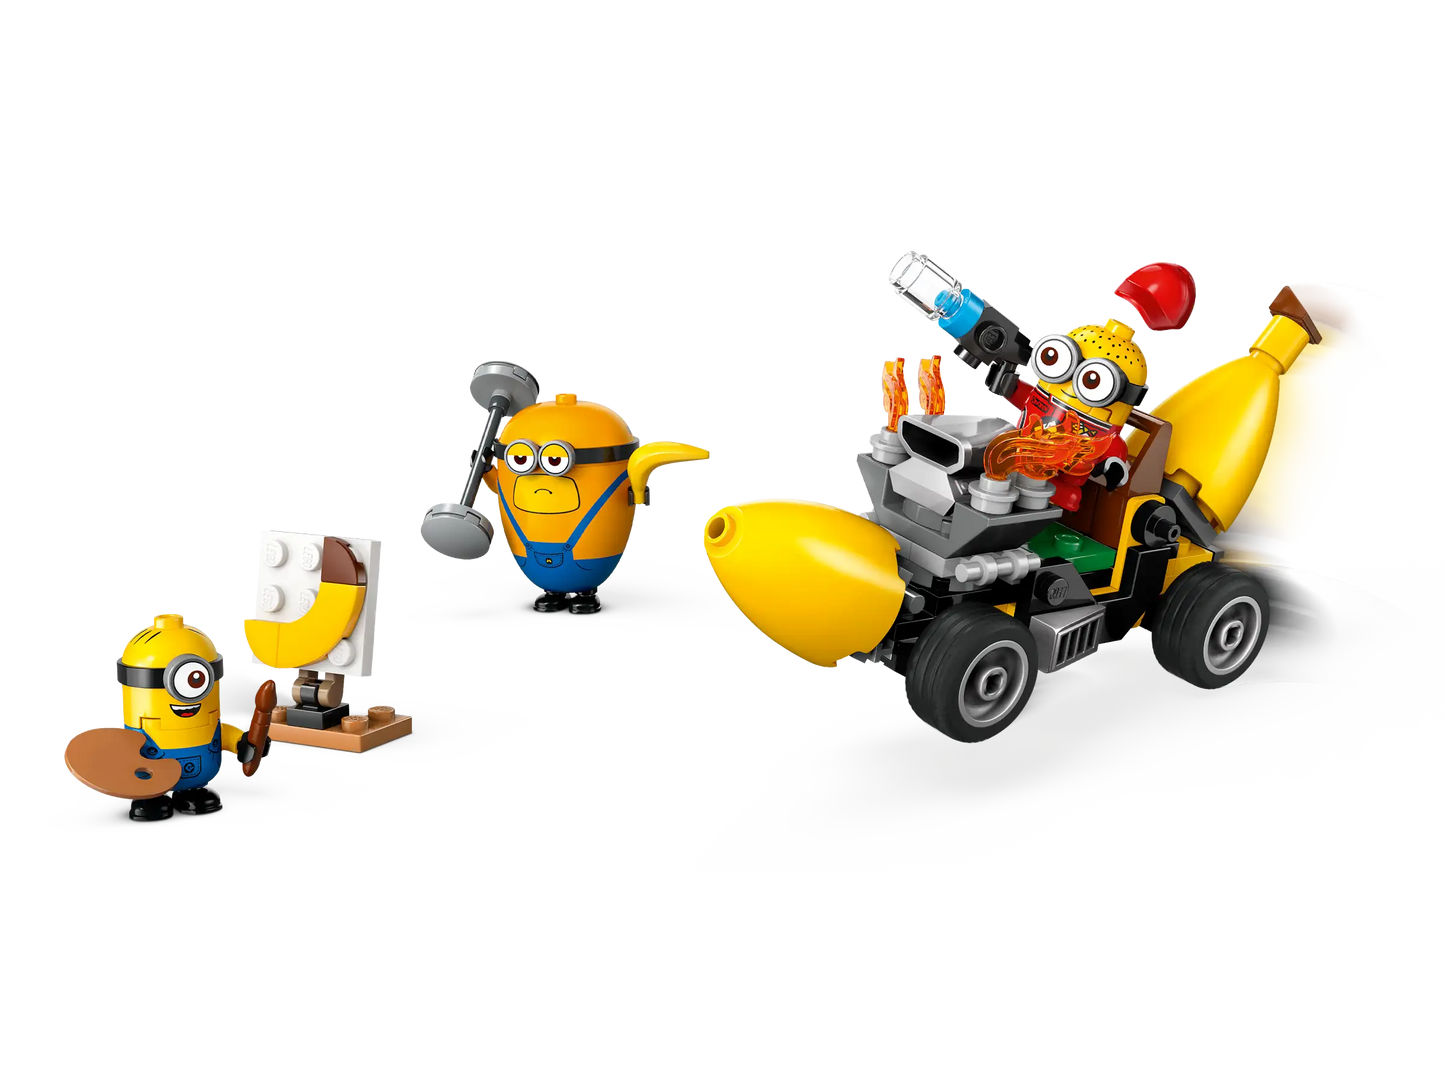 LEGO Despicable ME 4 Minions and Banana Car